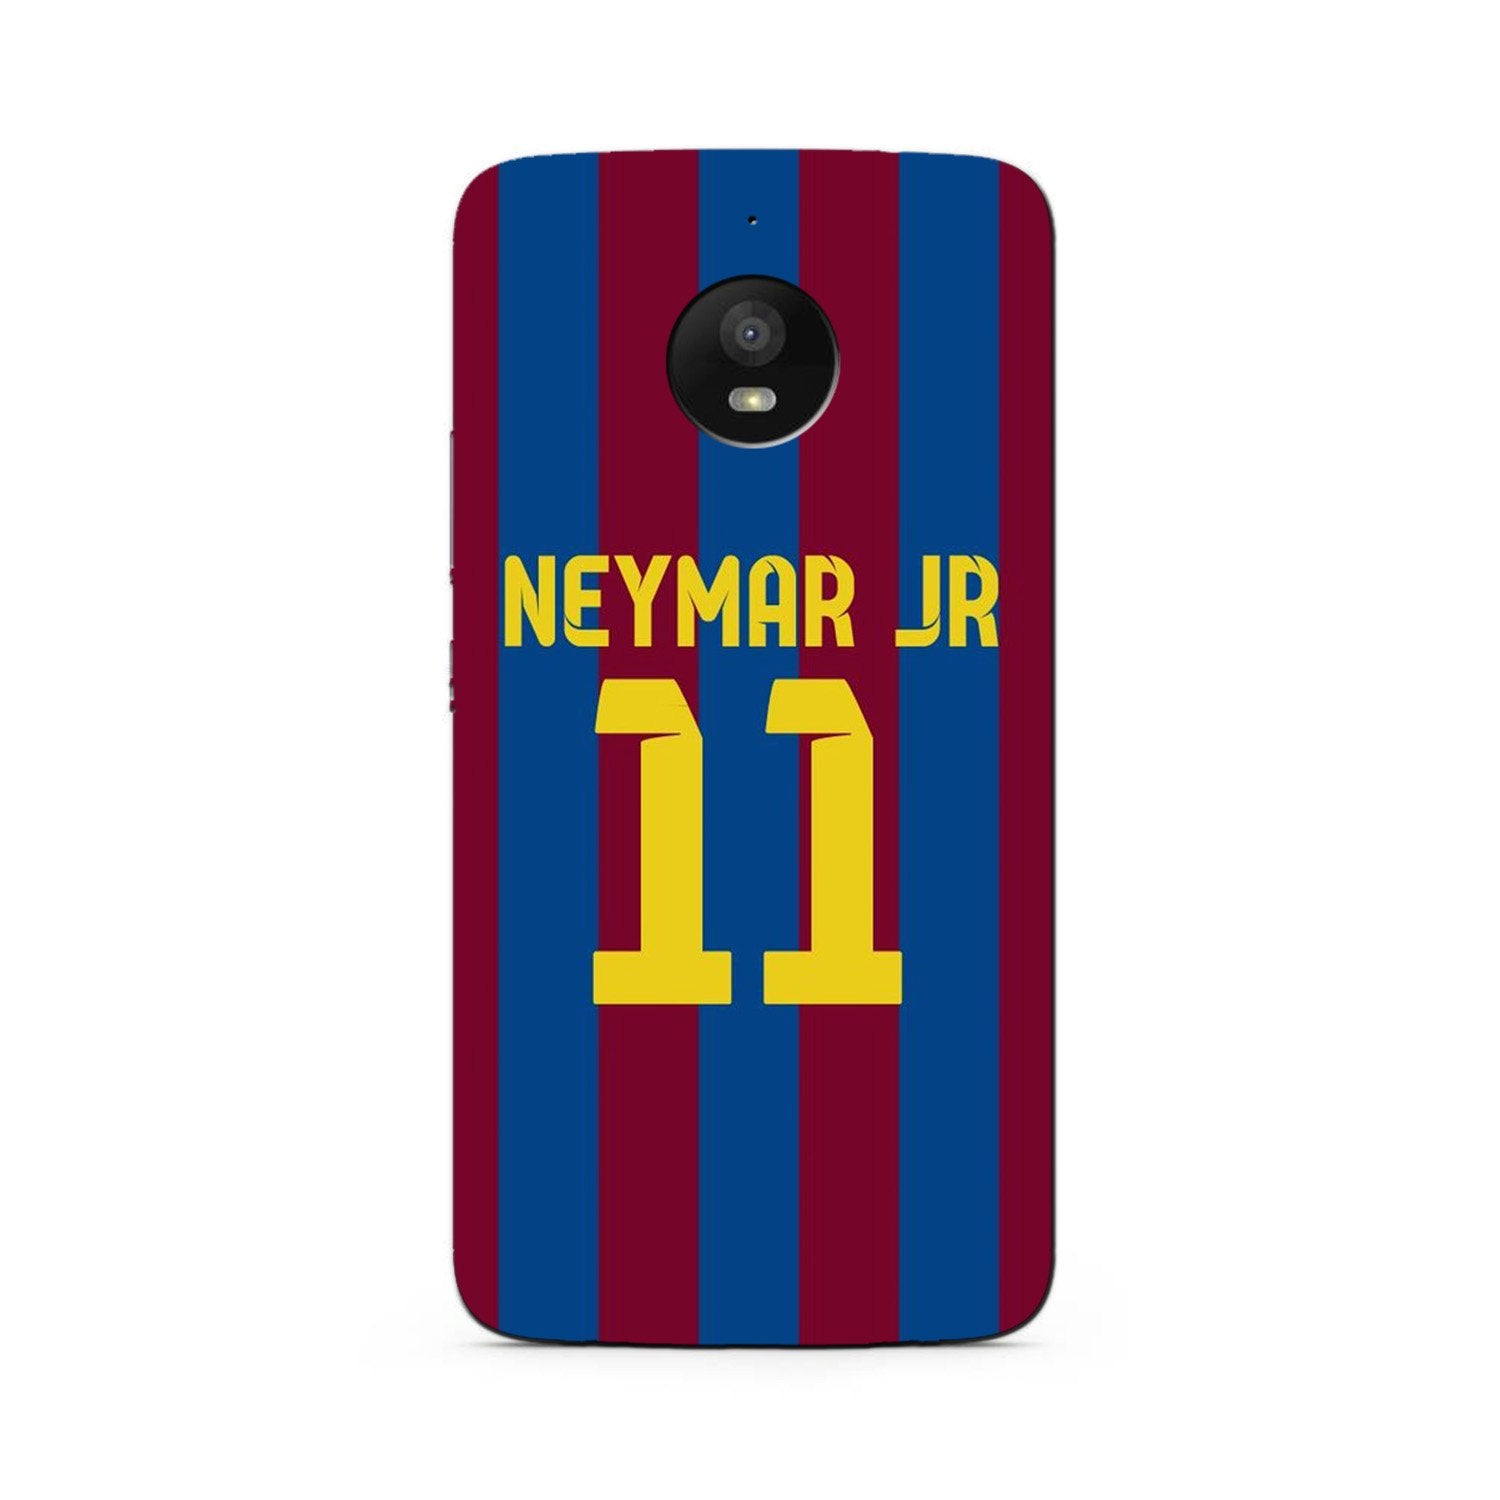 Neymar Jr Case for Moto G5s Plus  (Design - 162)